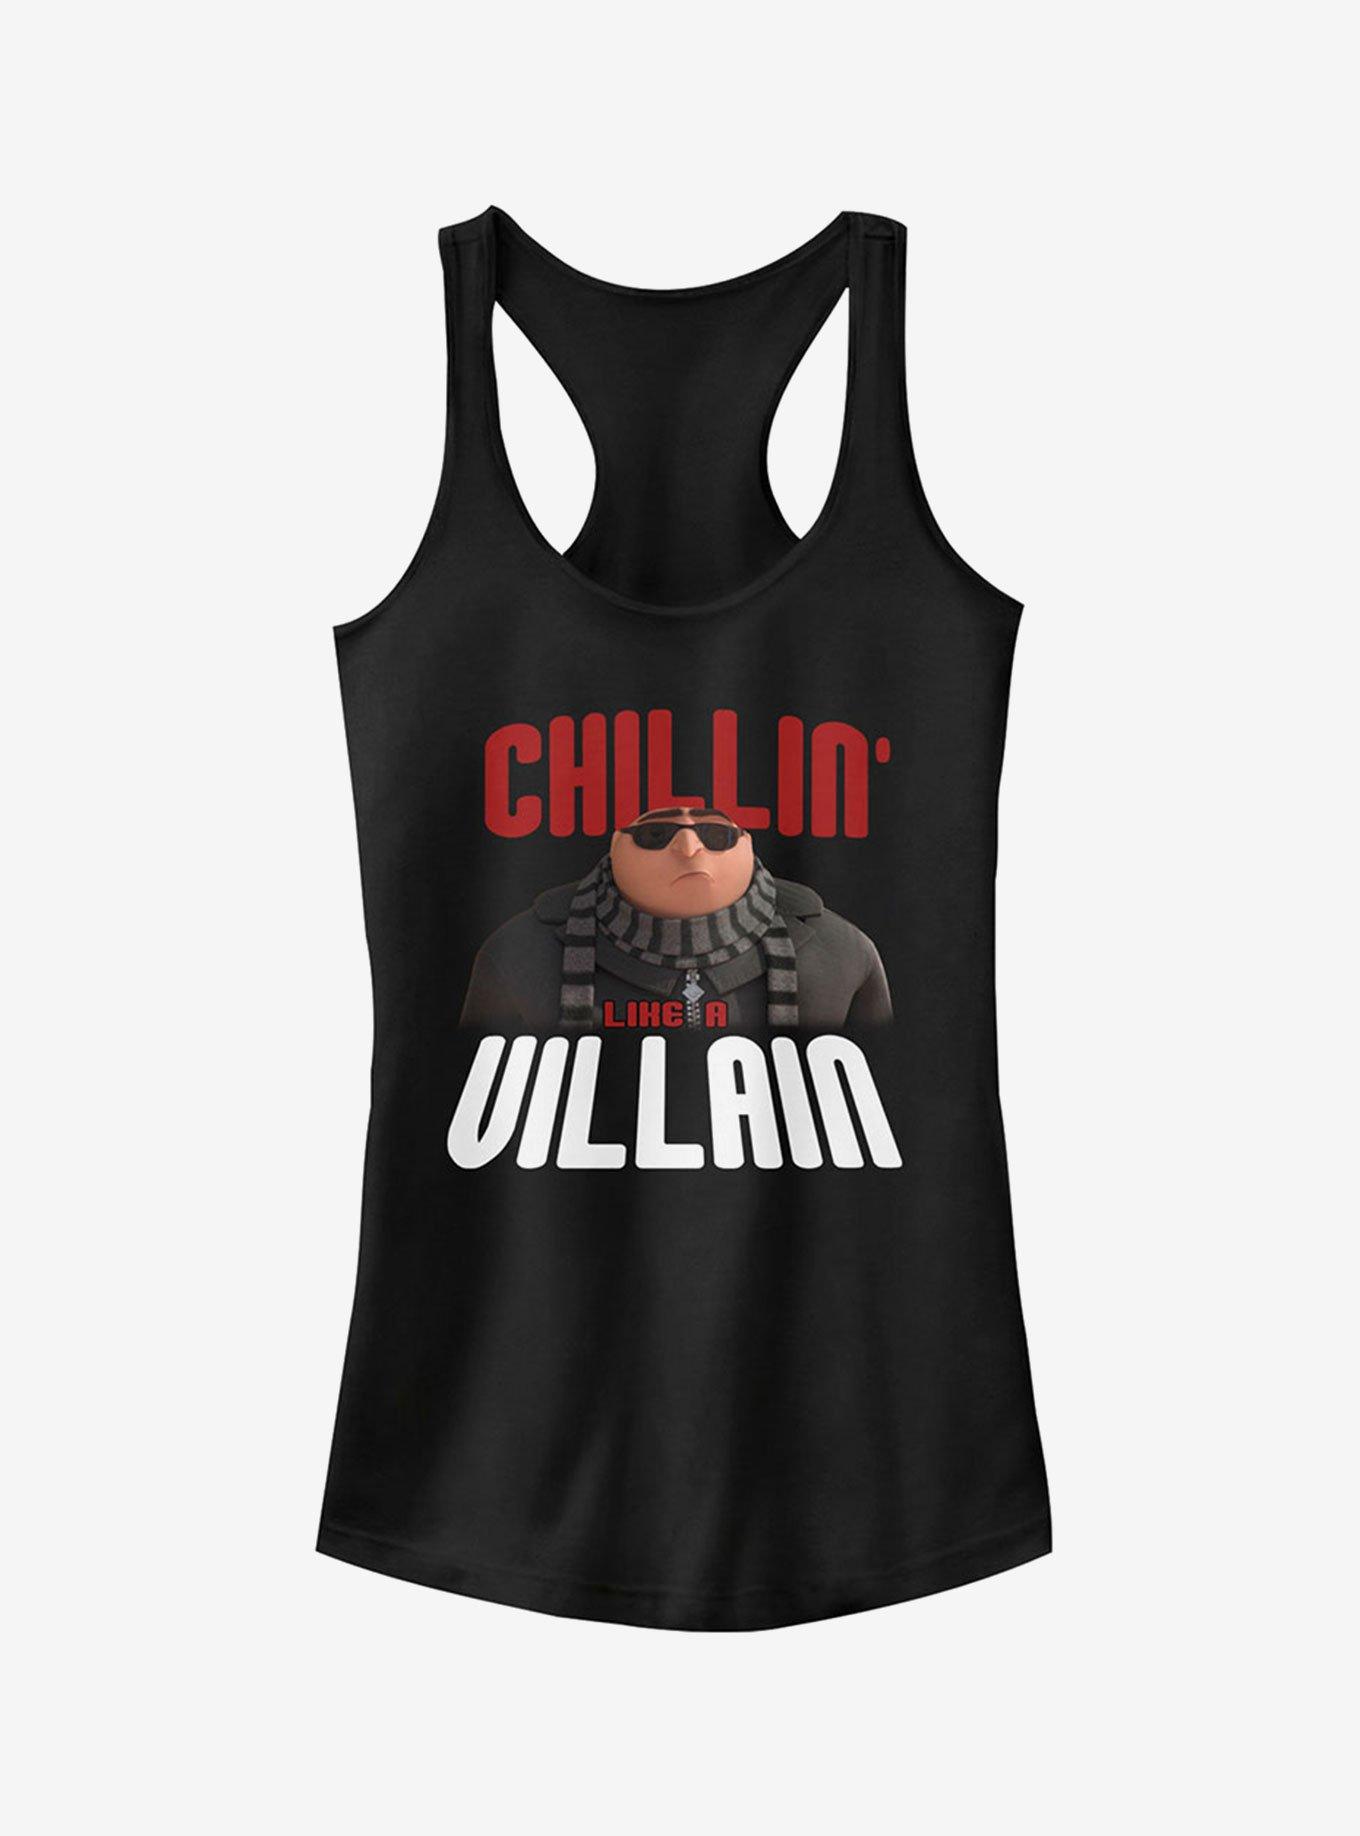 Minion Gru Chillin' Like a Villain Girls Tank Top